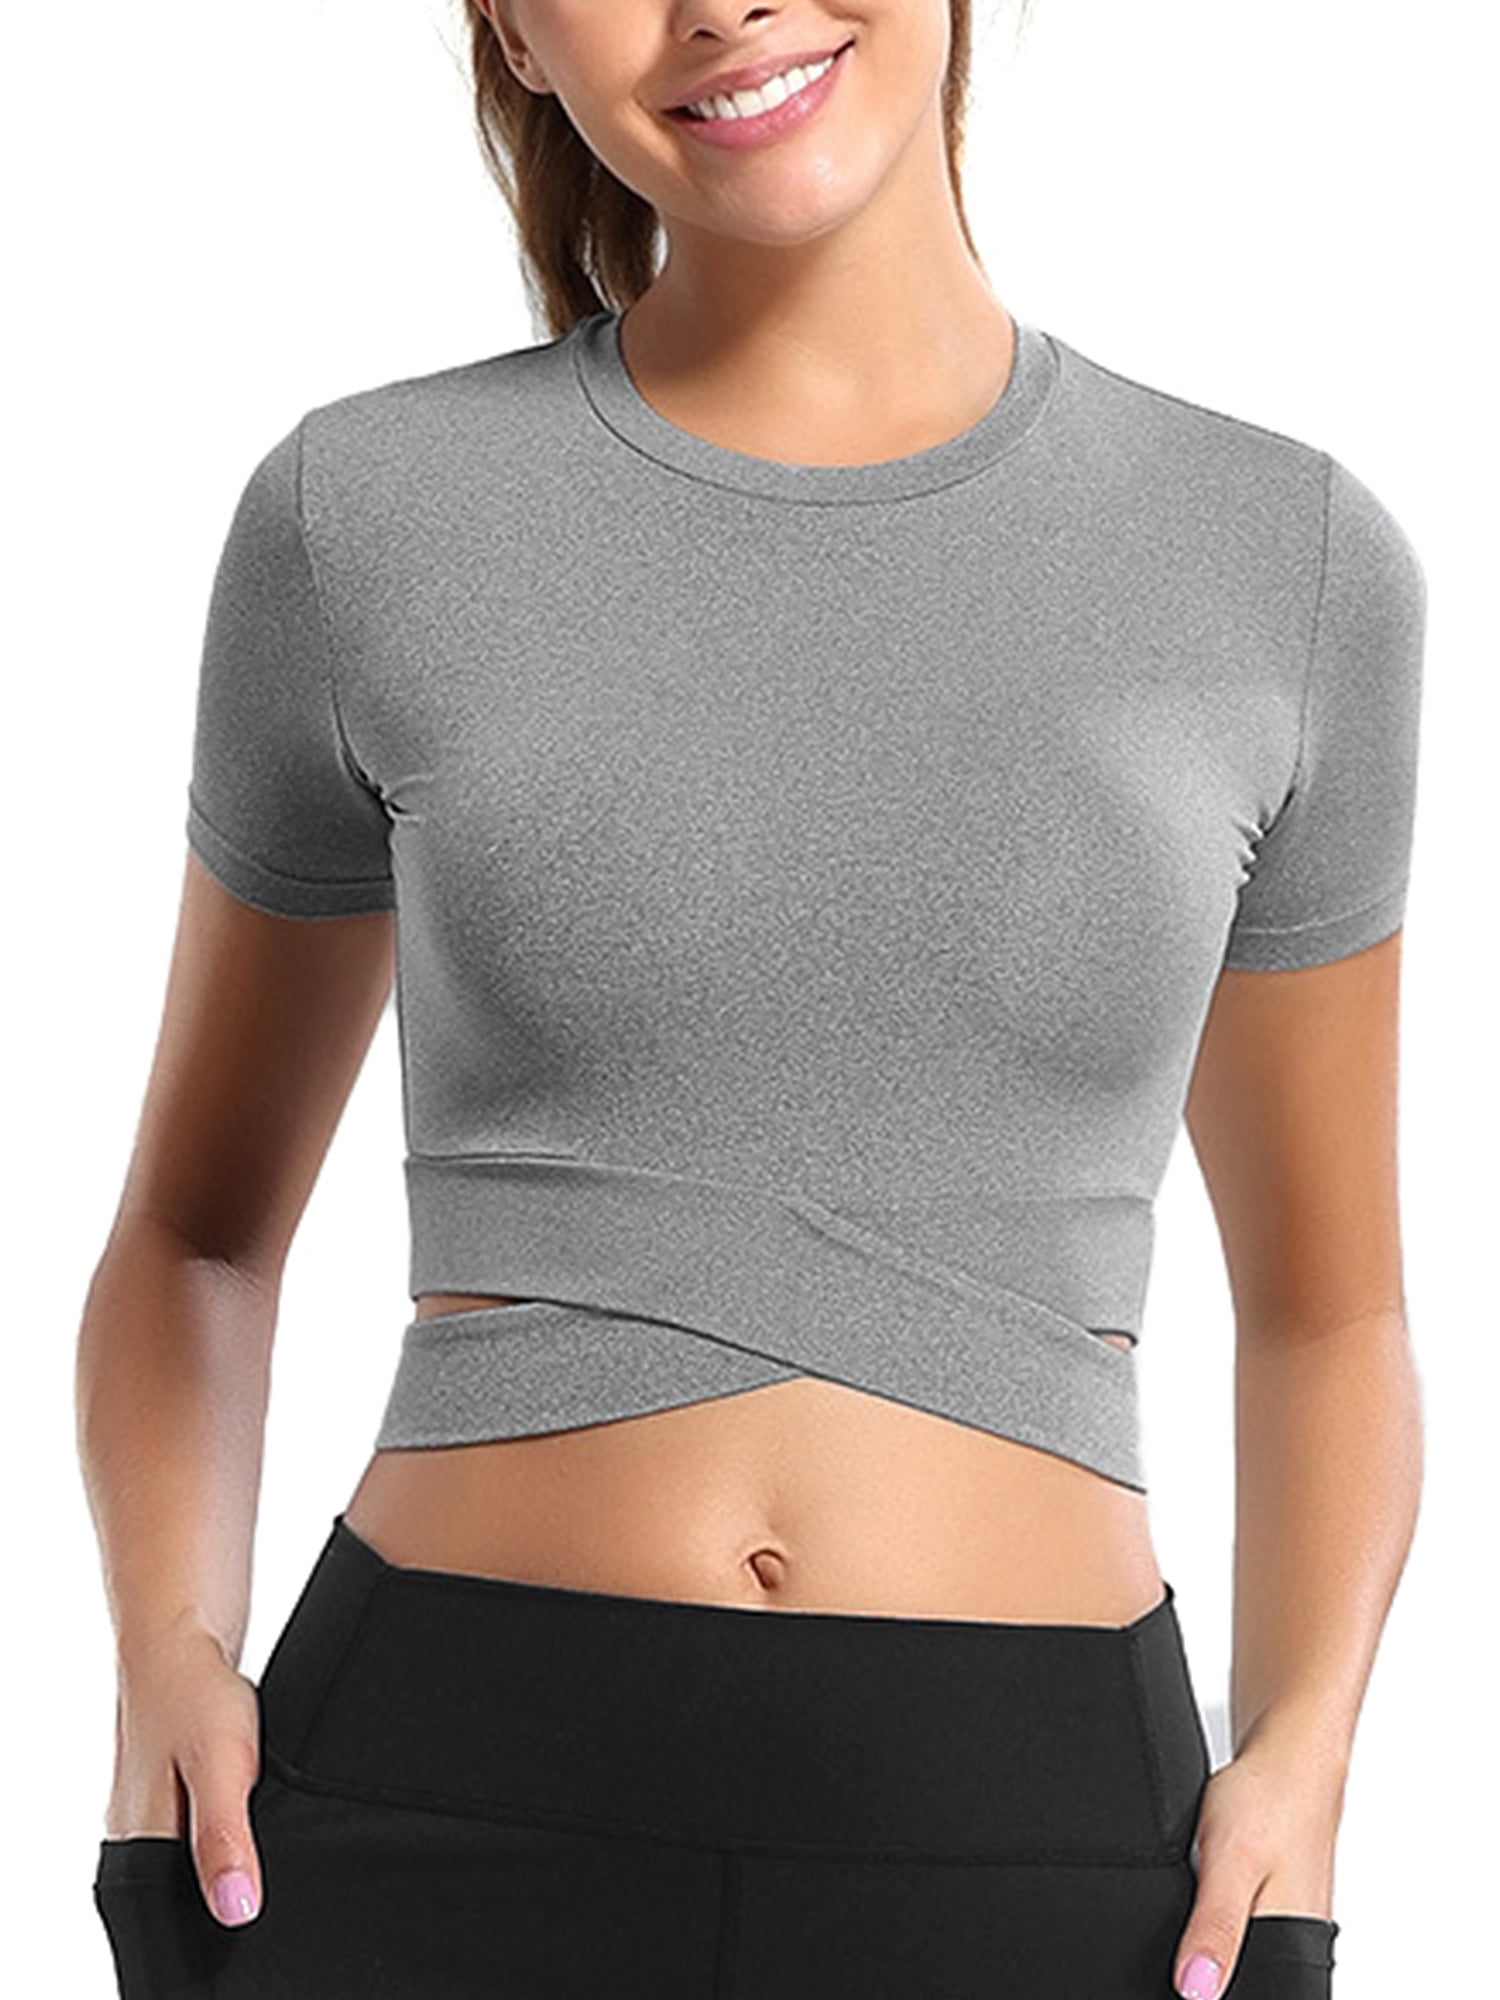 Women's Long Sleeve Yoga Crop Tops Scoop Neck Slim Fit Quick Dry